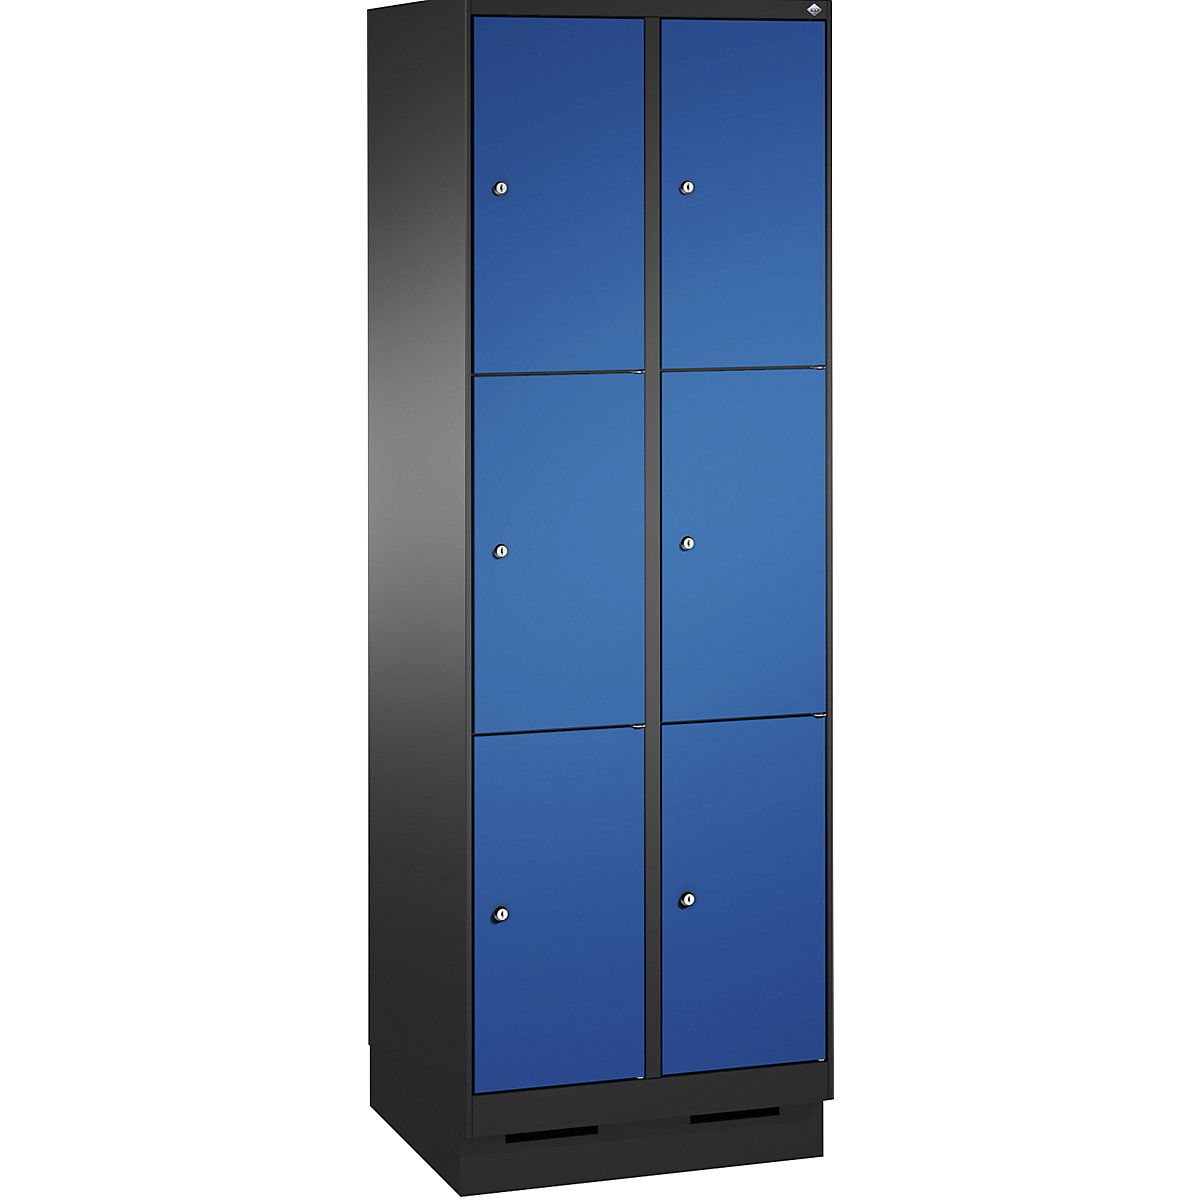 Armoire à casiers sur socle EVOLO – C+P, 2 compartiments, 3 casiers chacun, largeur compartiments 300 mm, gris noir / bleu gentiane-10